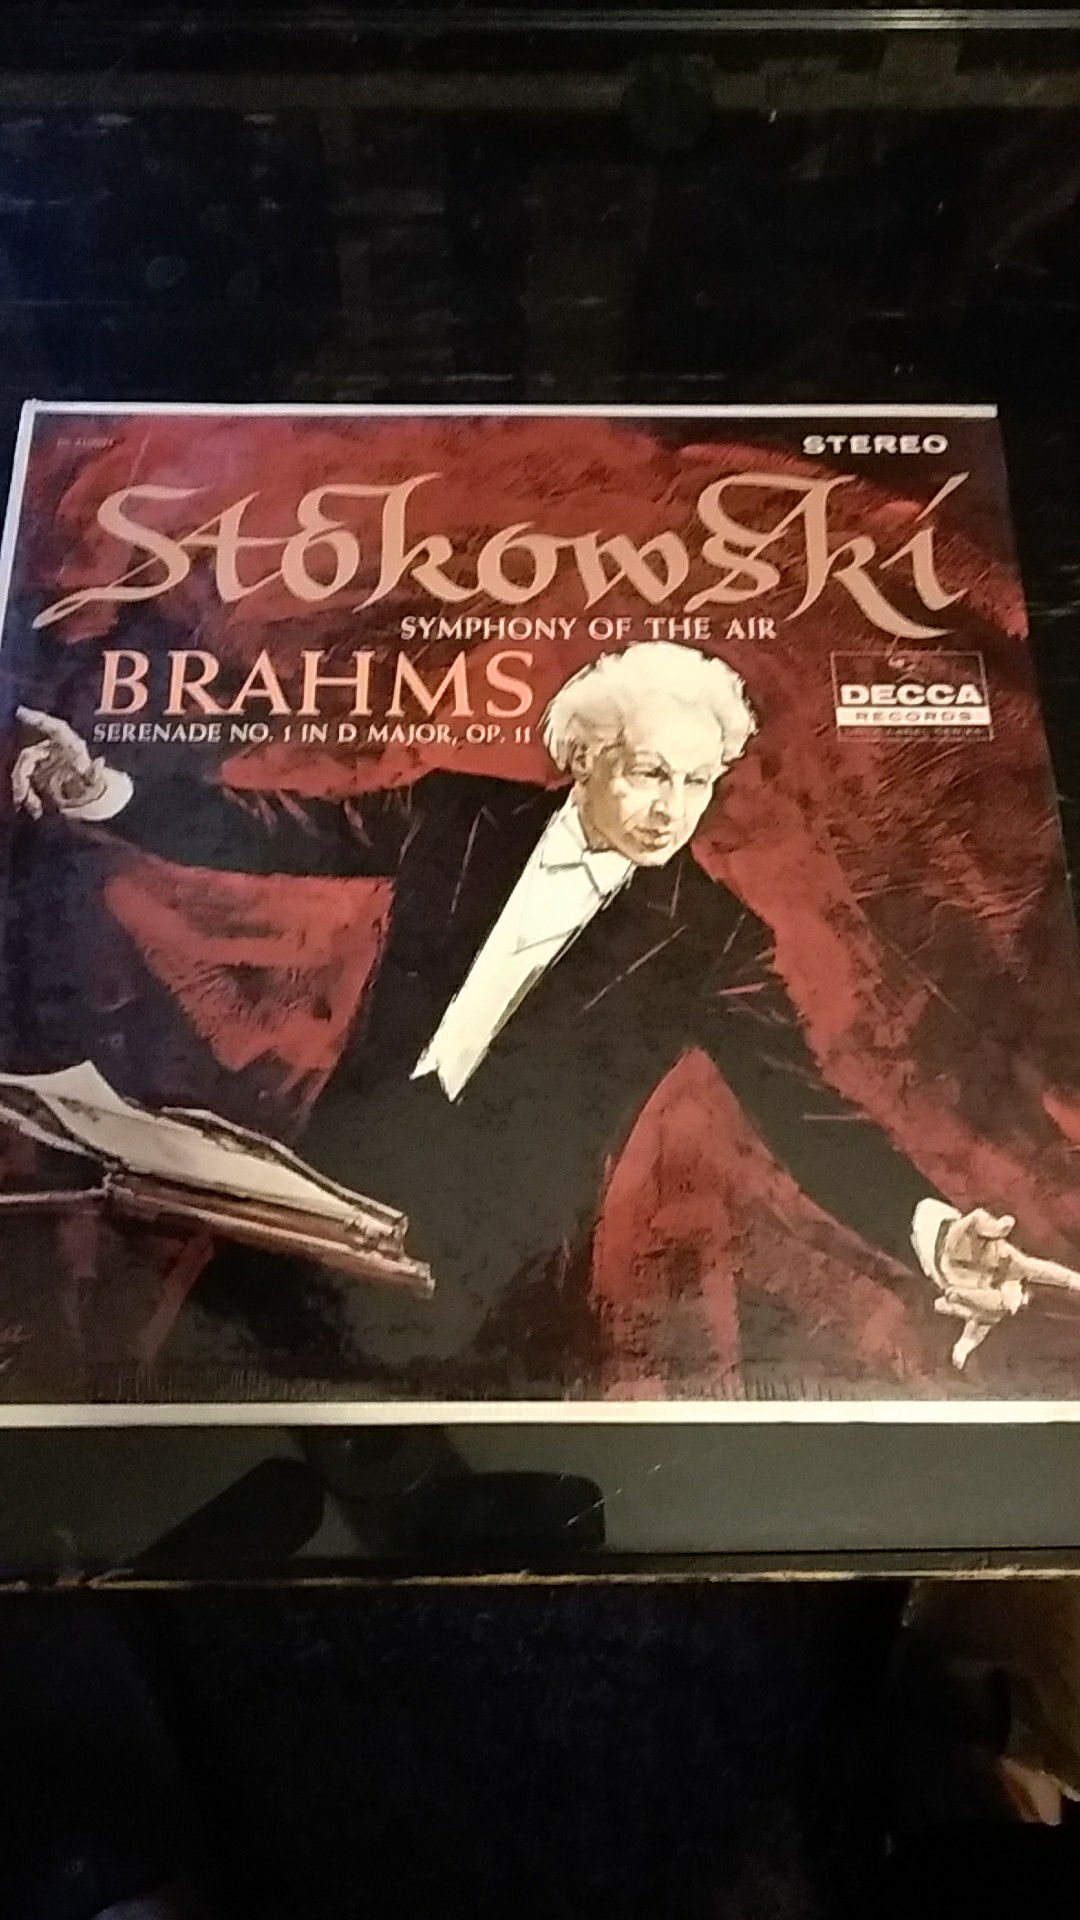 Brahms serenade No. 1 in D major, Op. 11 Stokowski vinyl album